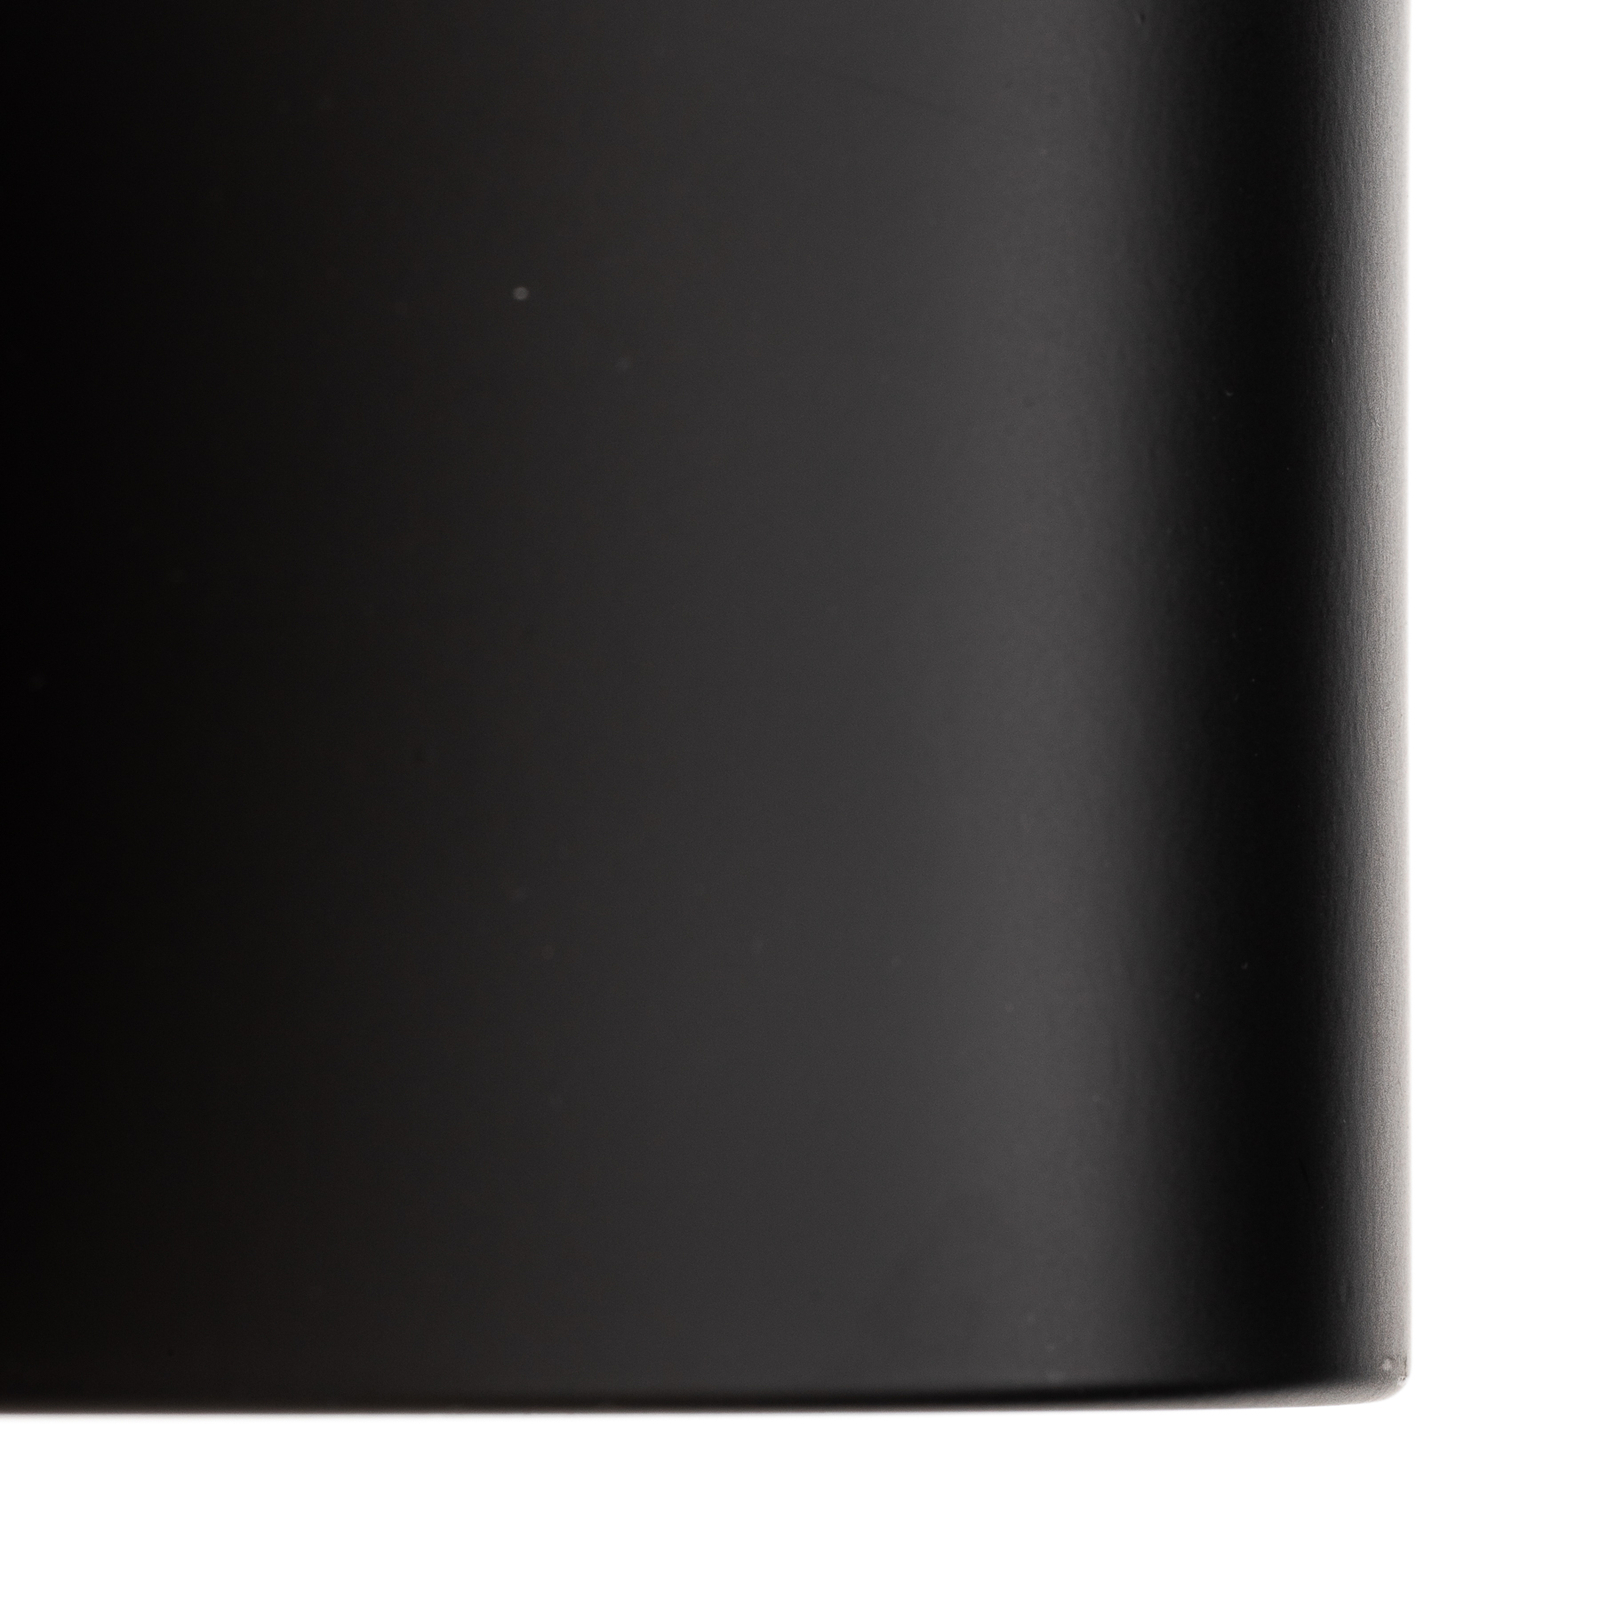 Ita LED downlight σε μαύρο χρώμα με διαχύτη, Ø 15 cm